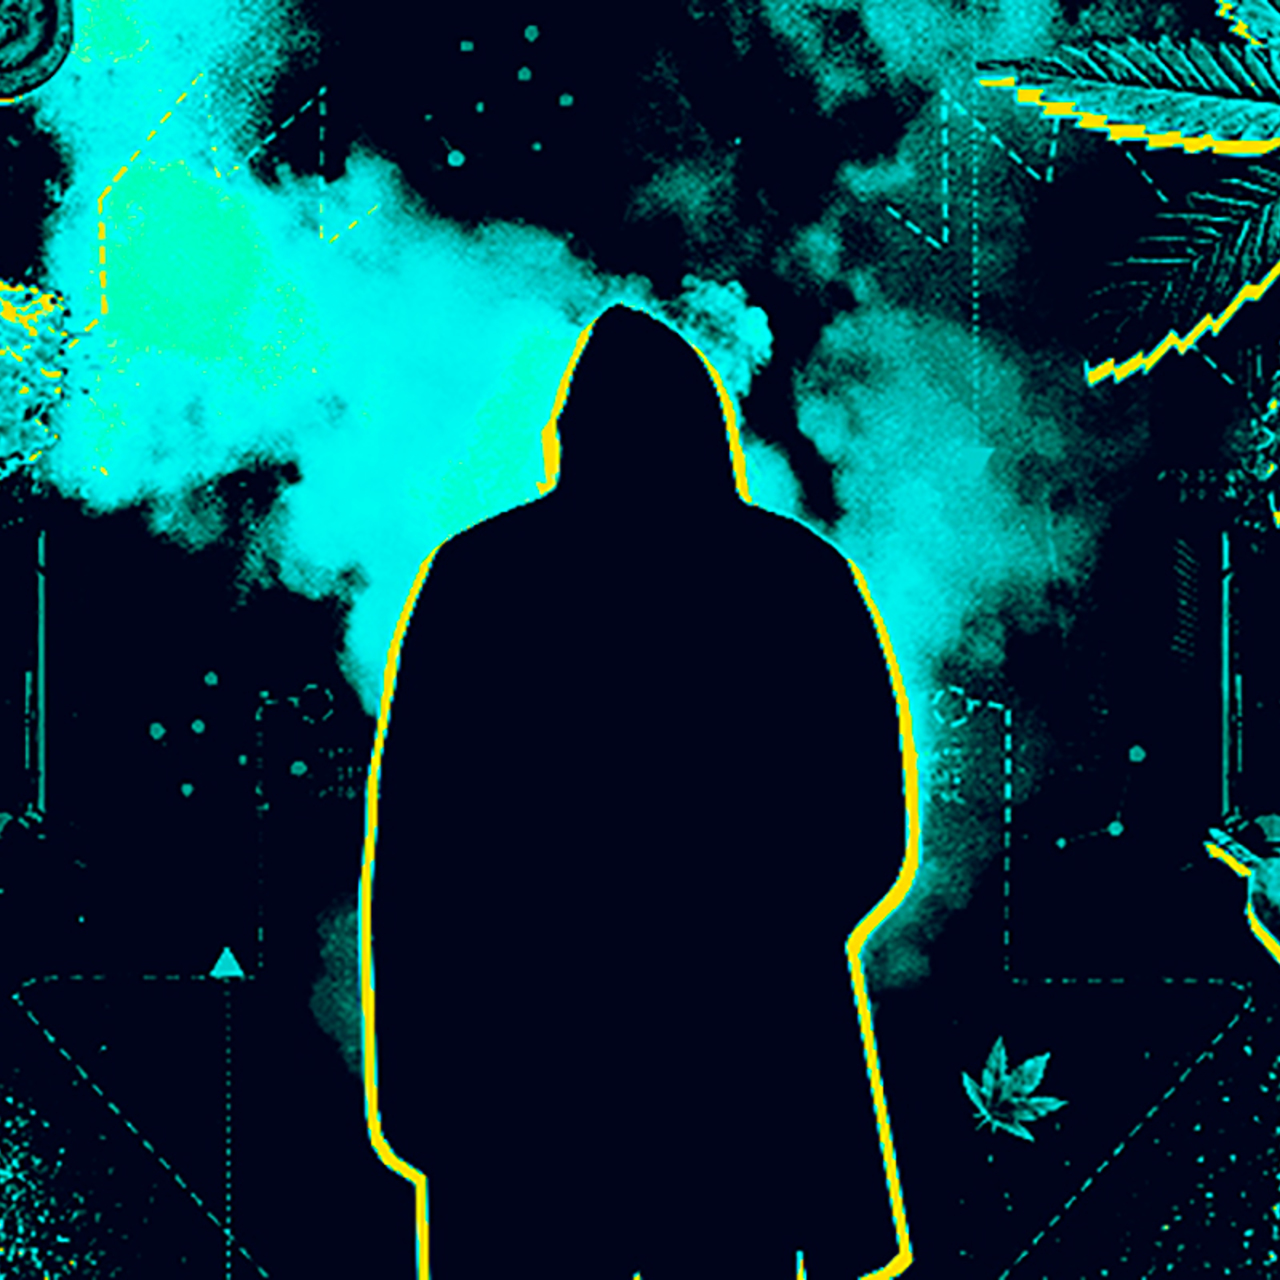 Darknet 2015 hudra группировки против наркотиков